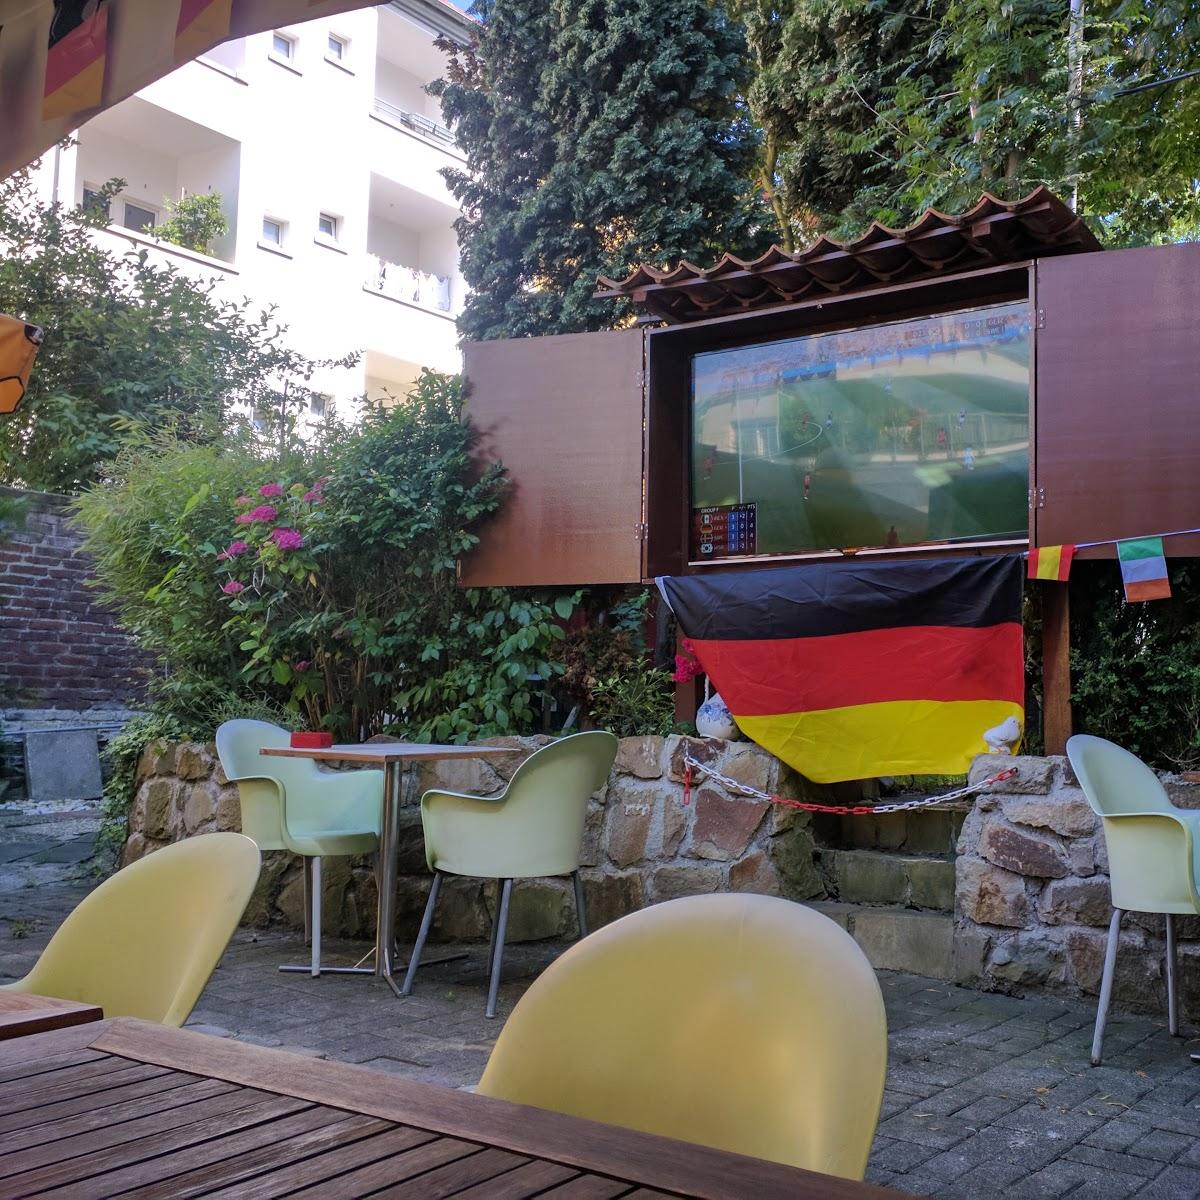 Restaurant "Schlemmer Grill" in Dortmund